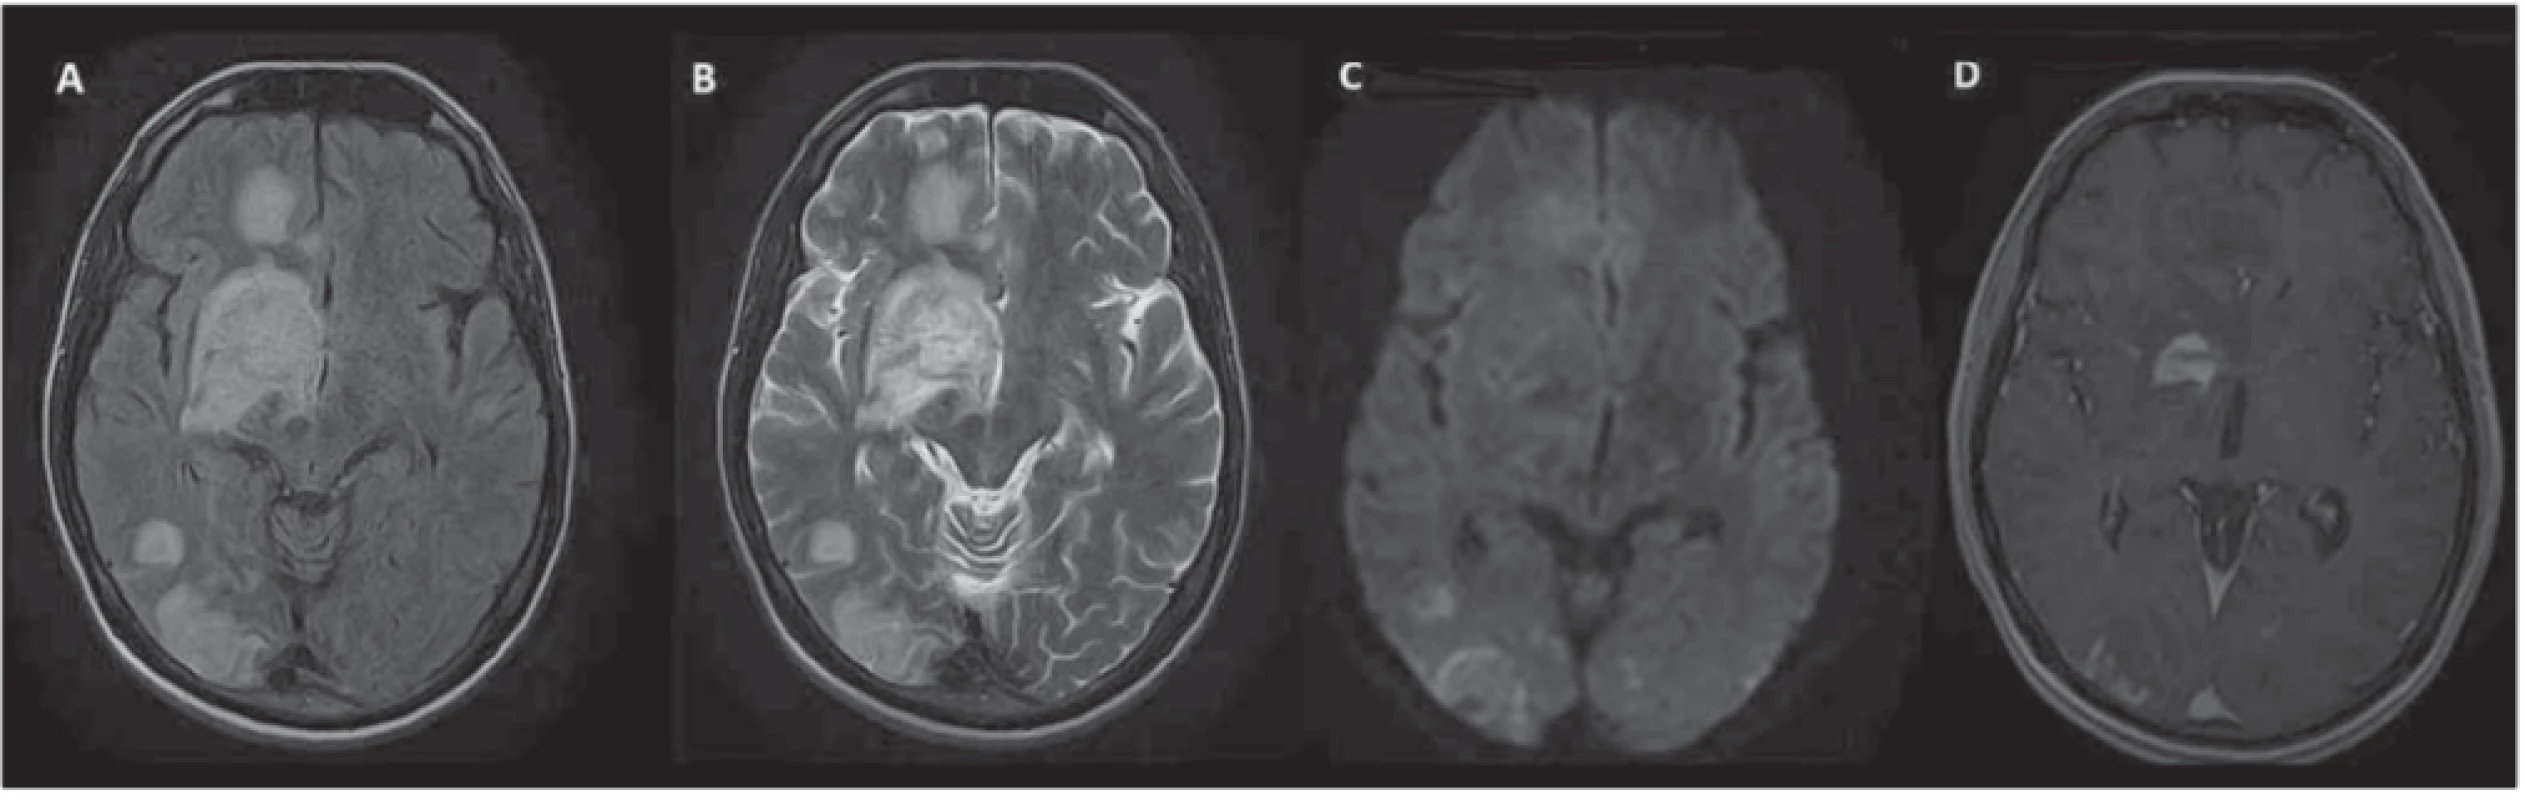 MR mozku – rozsáhlé ložiskové postižení intrakraniálních struktur s maximem v oblasti bazálních ganglií vpravo, některé léze
jsou expanzivní, s vazogenním edémem.<br>
Fig. 1. Brain MRI – extensive focal involvement of intracranial structures, especially in right-sided basal ganglia; some lesions are expansive with vasogenic edema. 